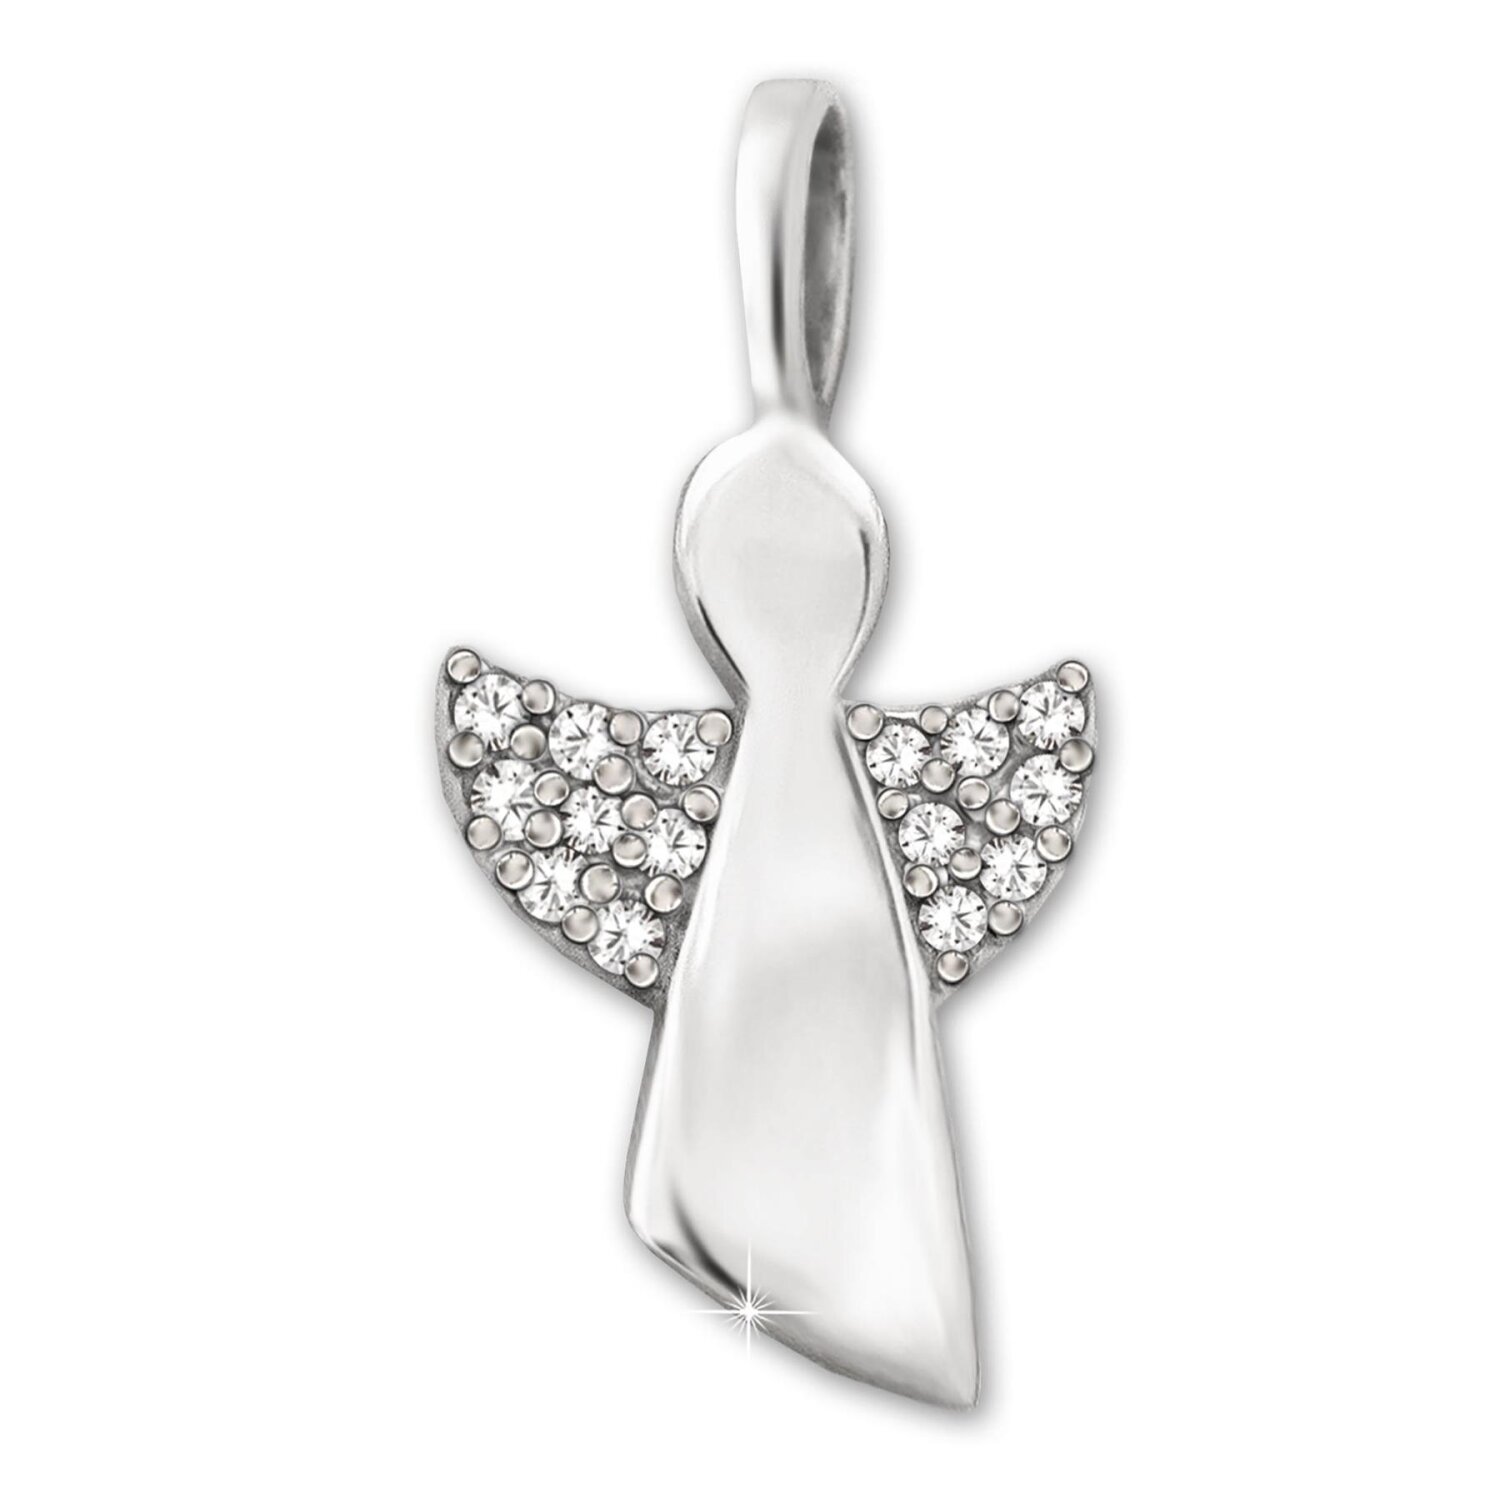 Silberner Engel 16 mm stilisiert Zirkonias auf Flügeln Echt Silber 925 rhodiniert